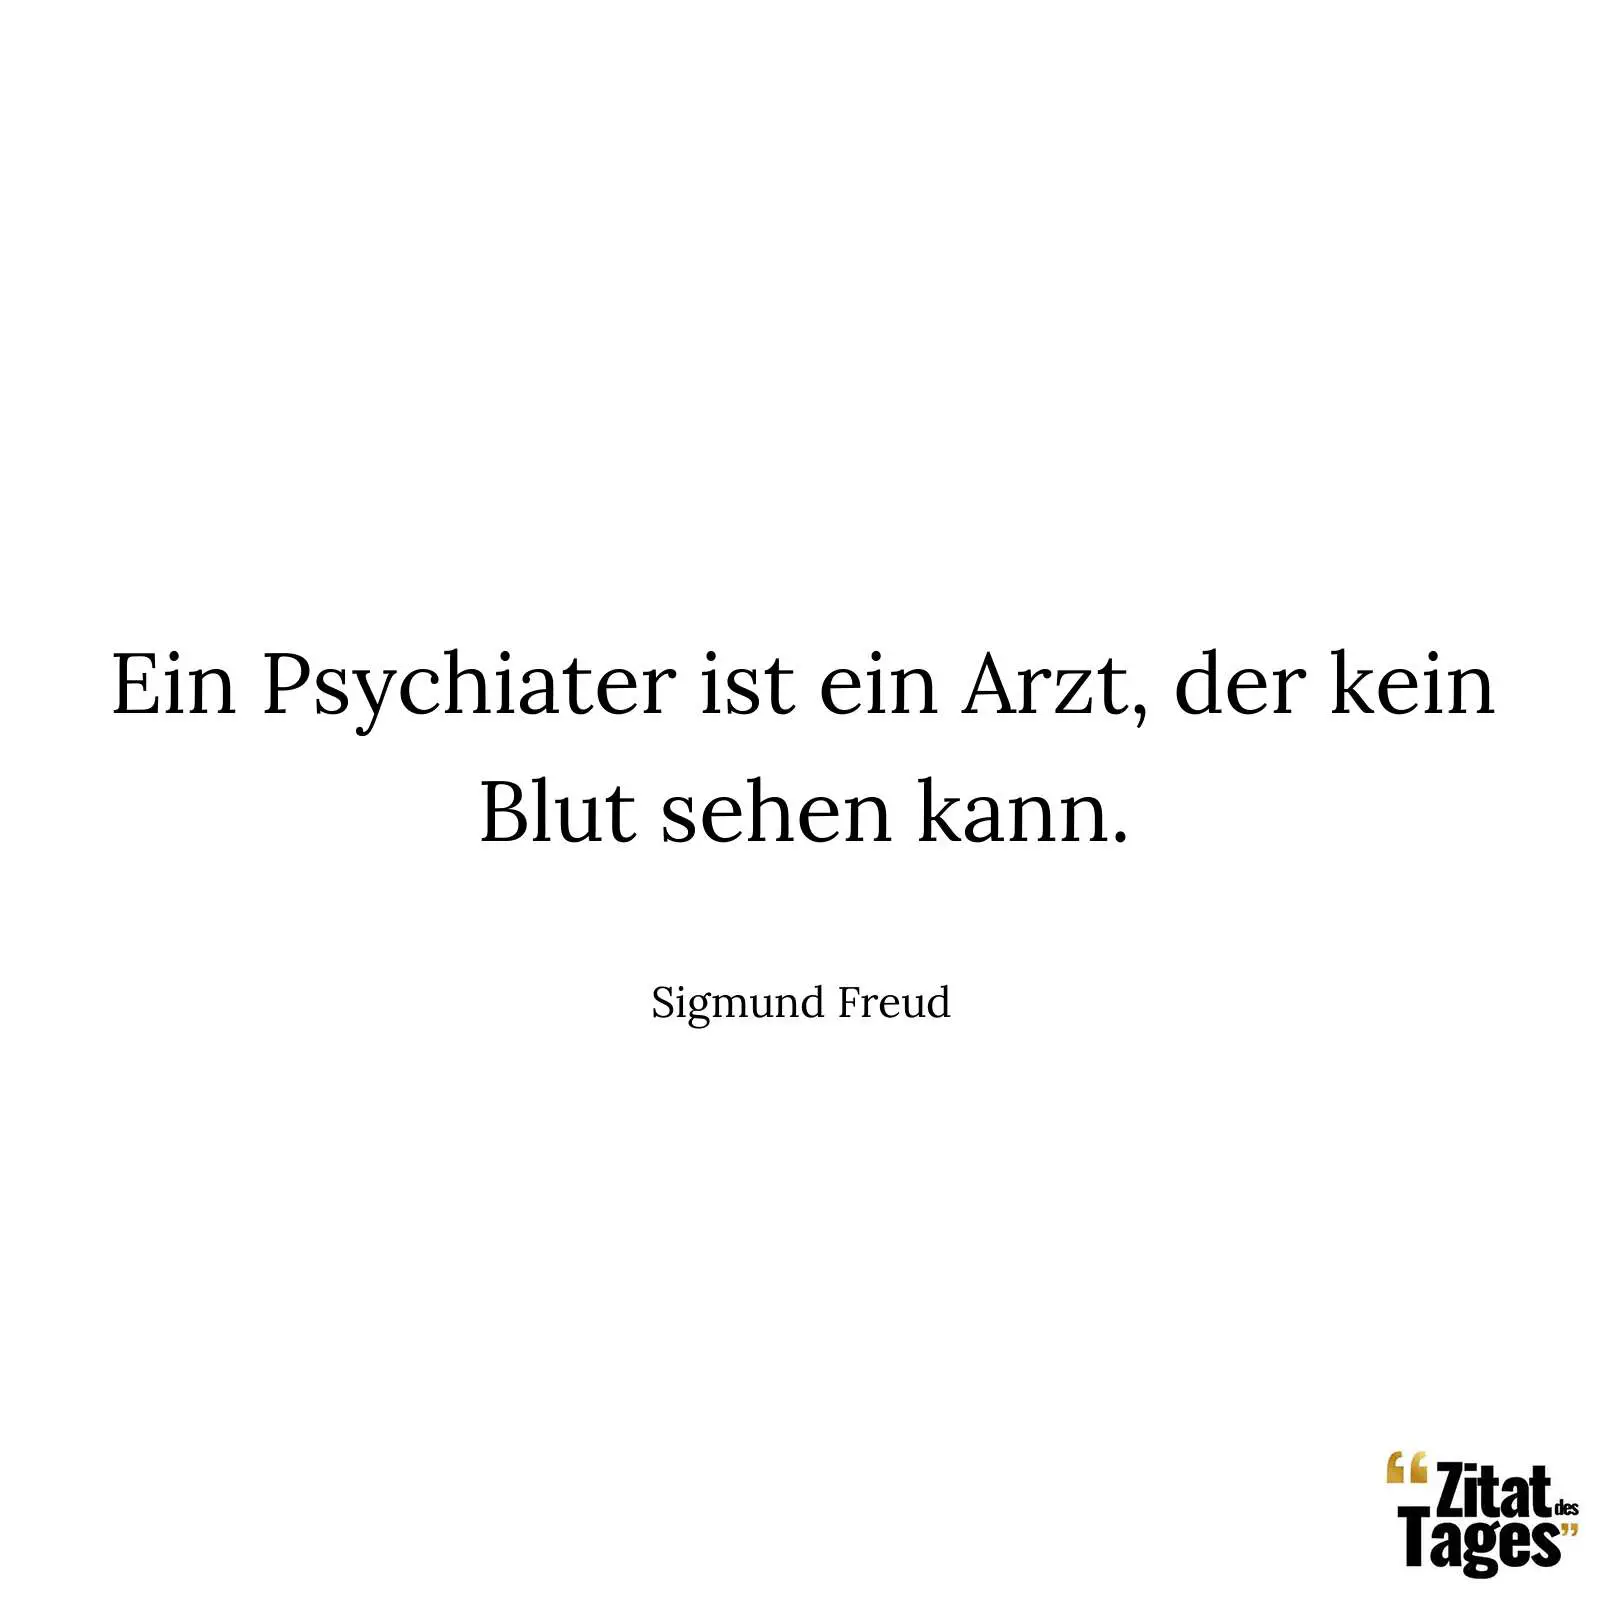 Ein Psychiater ist ein Arzt, der kein Blut sehen kann. - Sigmund Freud